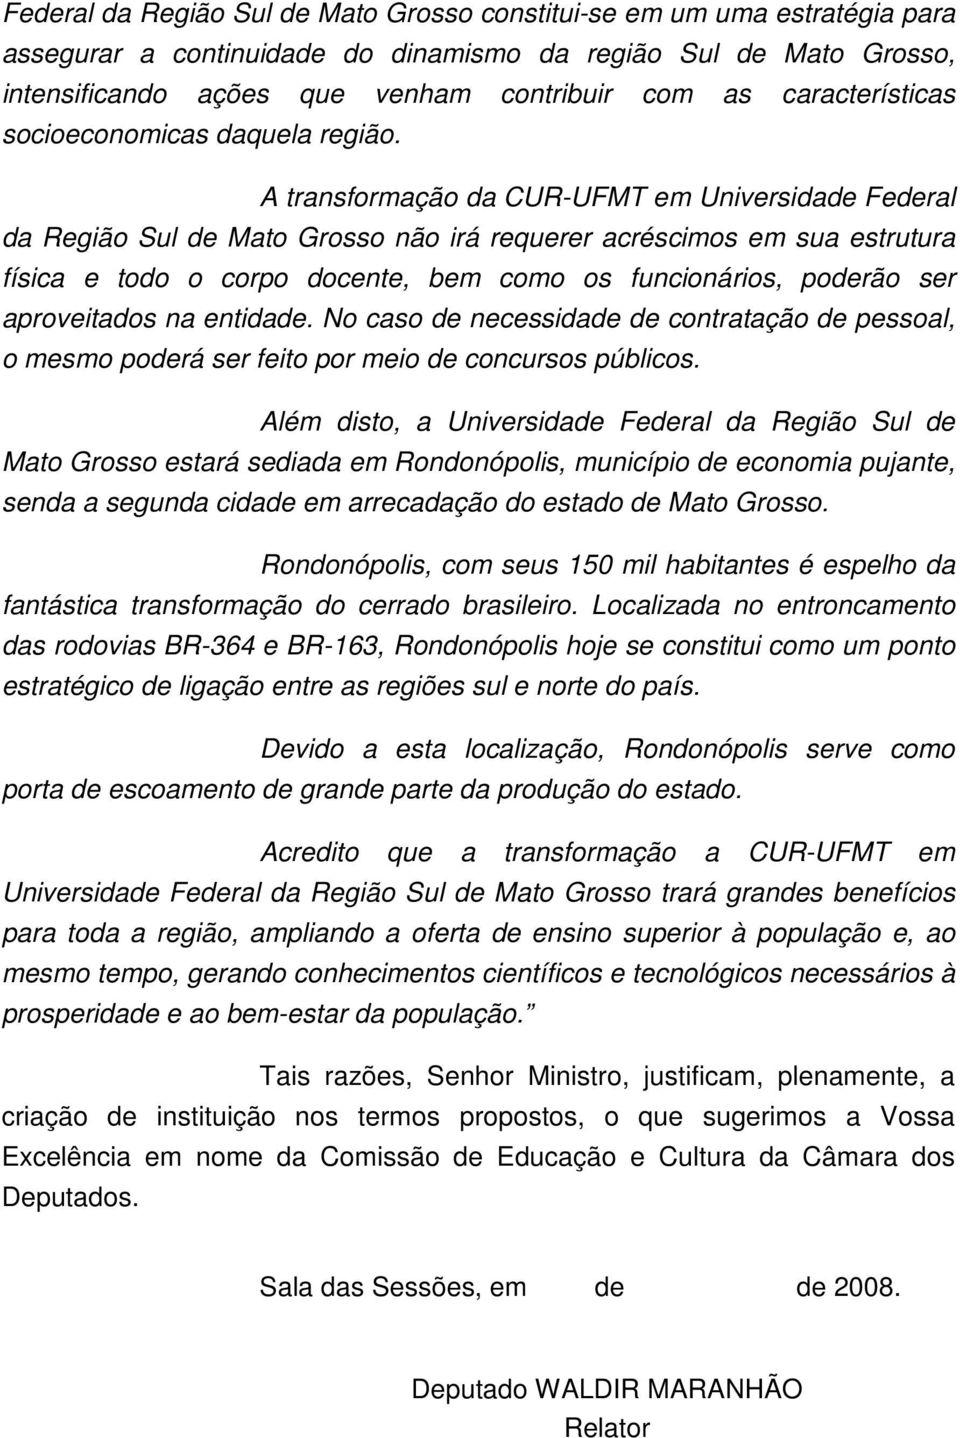 A transformação da CUR-UFMT em Universidade Federal da Região Sul de Mato Grosso não irá requerer acréscimos em sua estrutura física e todo o corpo docente, bem como os funcionários, poderão ser